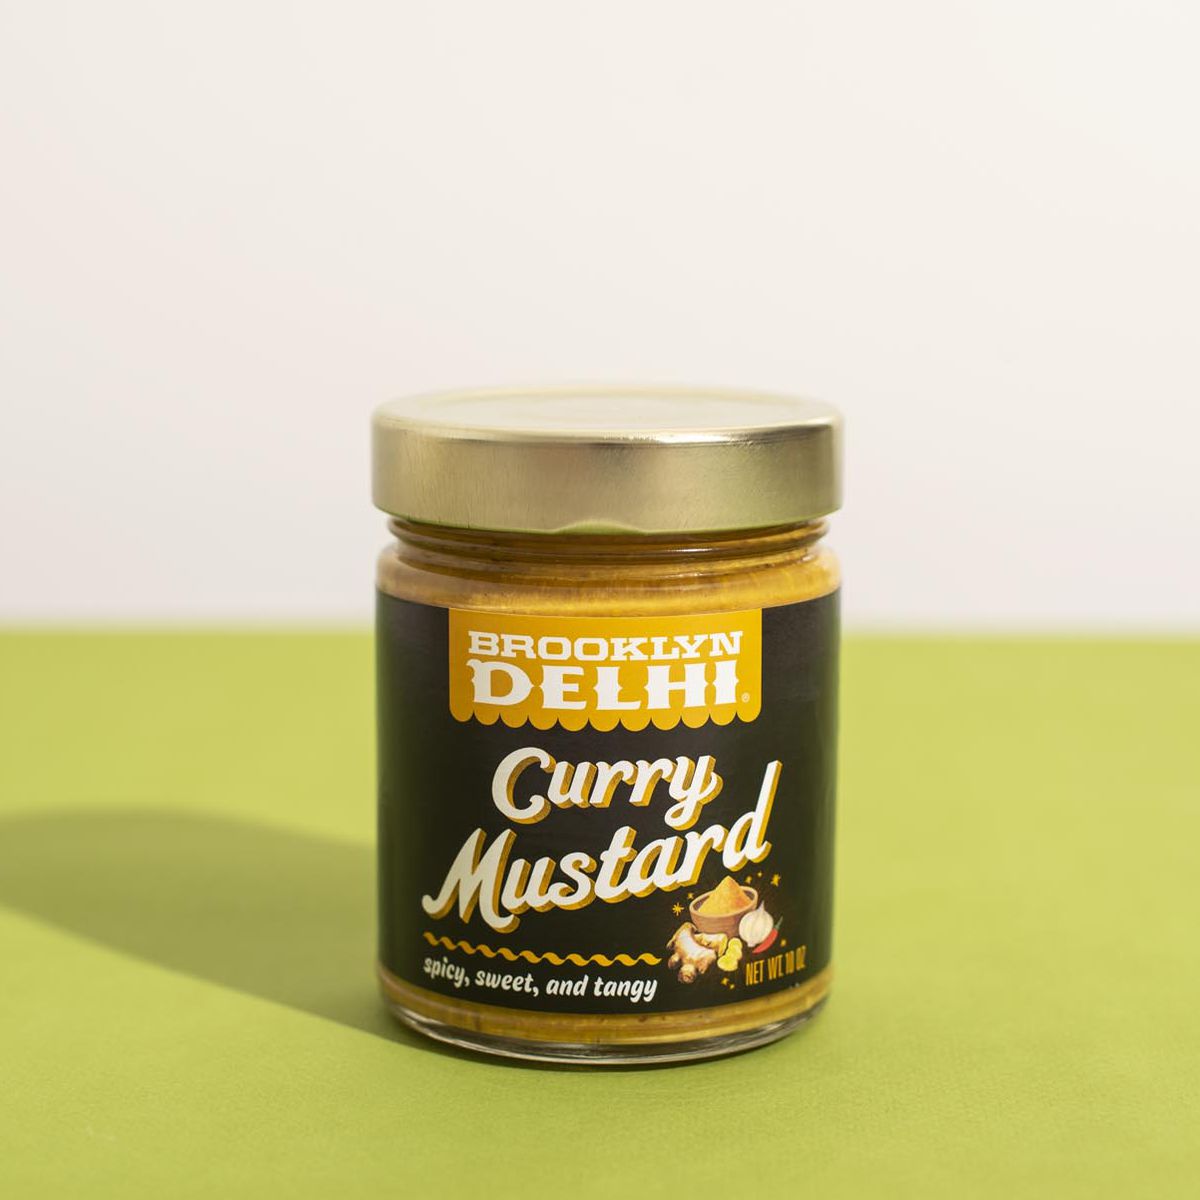 A jar of Brooklyn Delhi Curry Mustard on a green table.